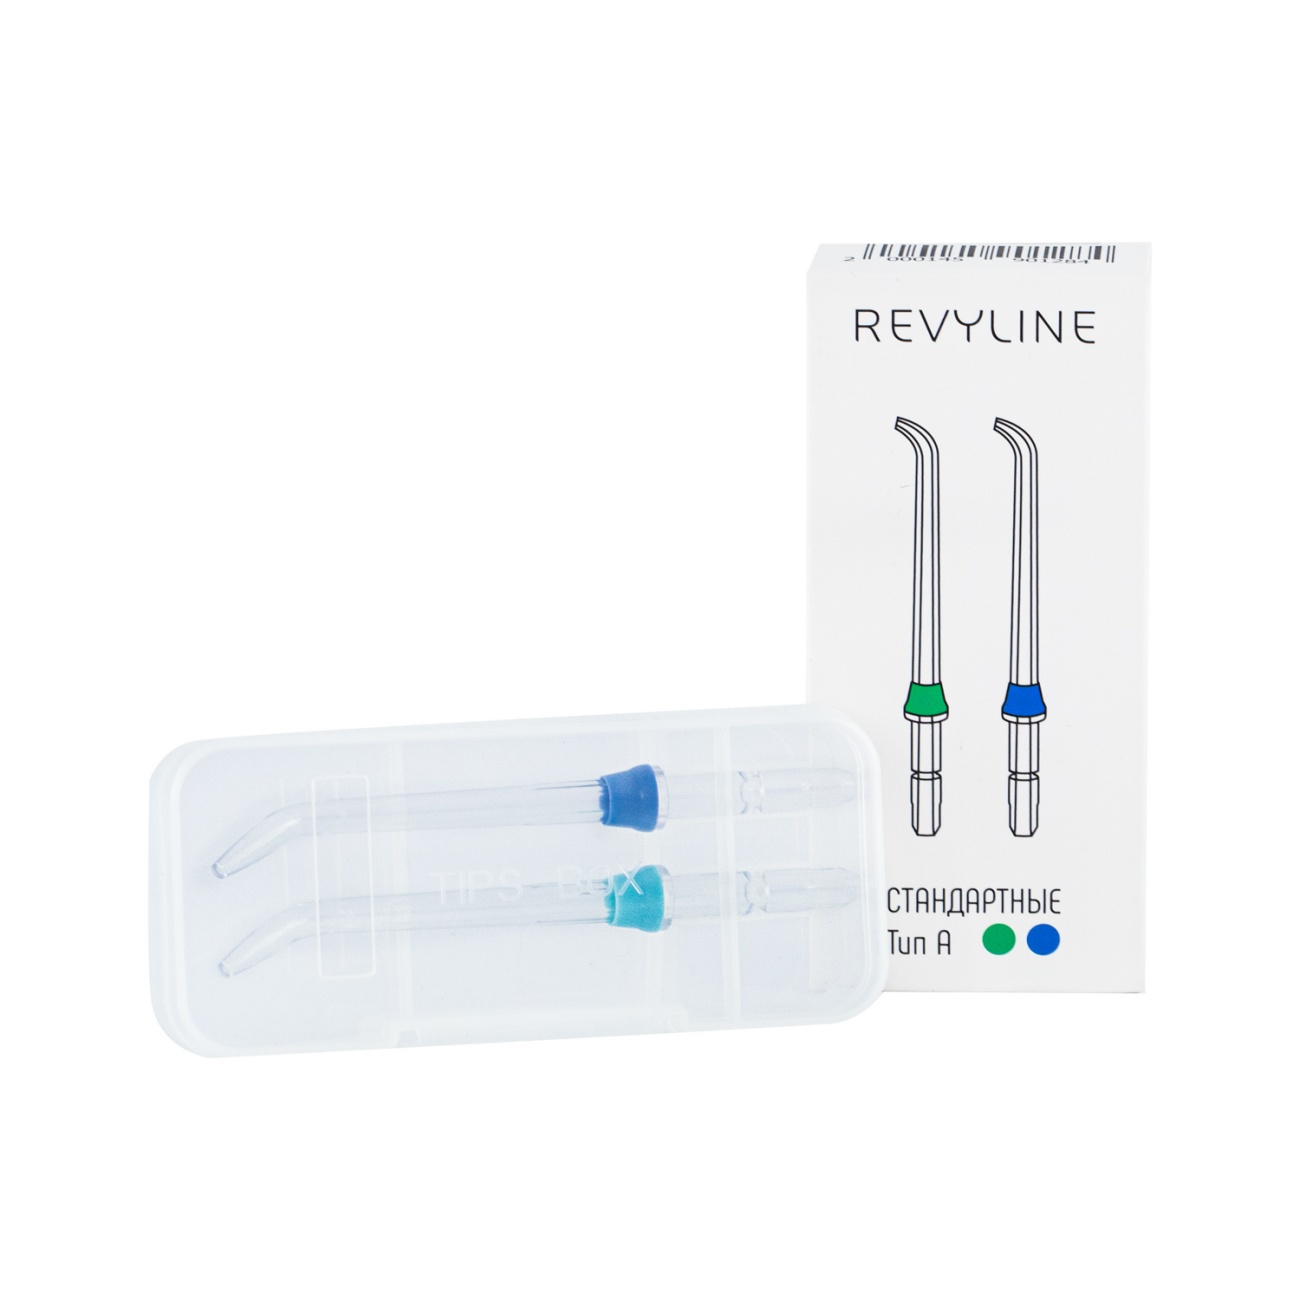 Насадки Revyline стандартные для ирригаторов Revyline RL 100/500/800/900